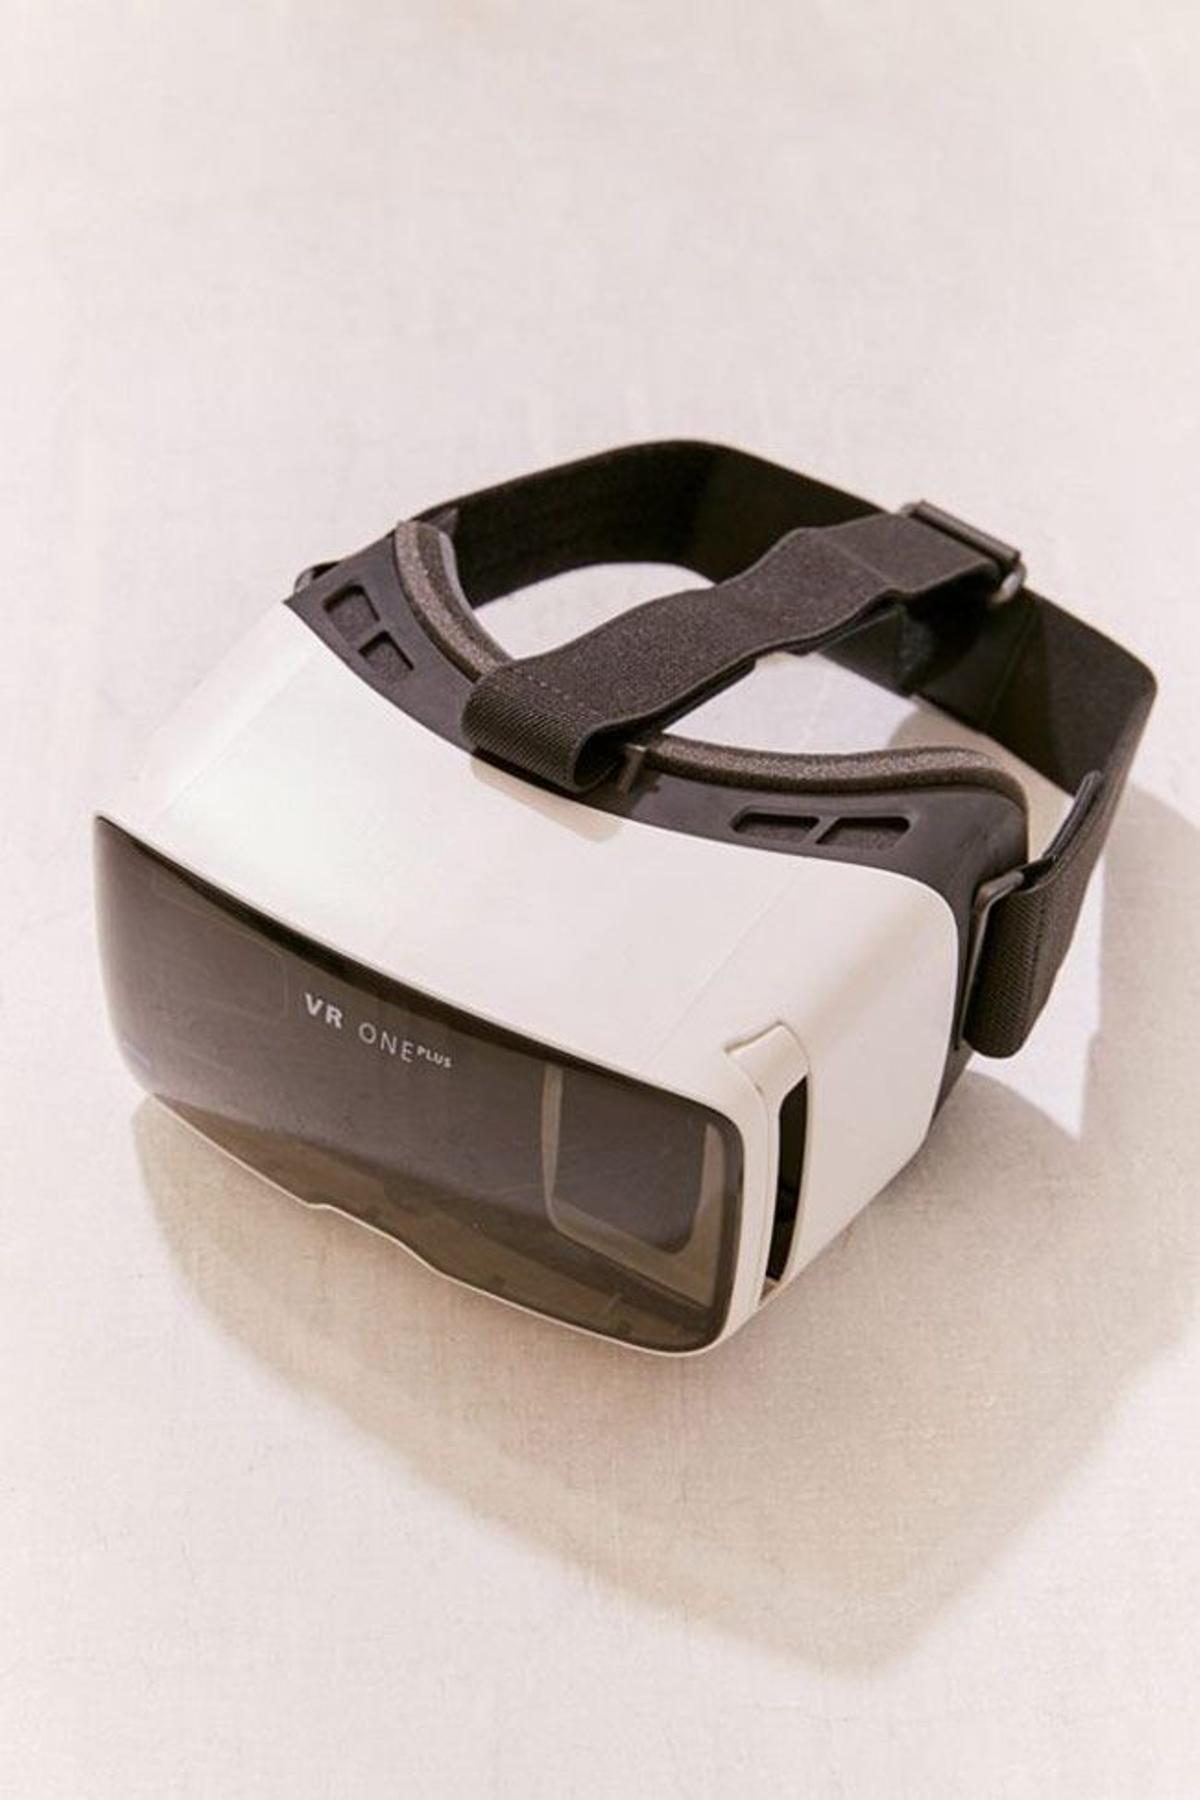 Las gafas de realidad virtual